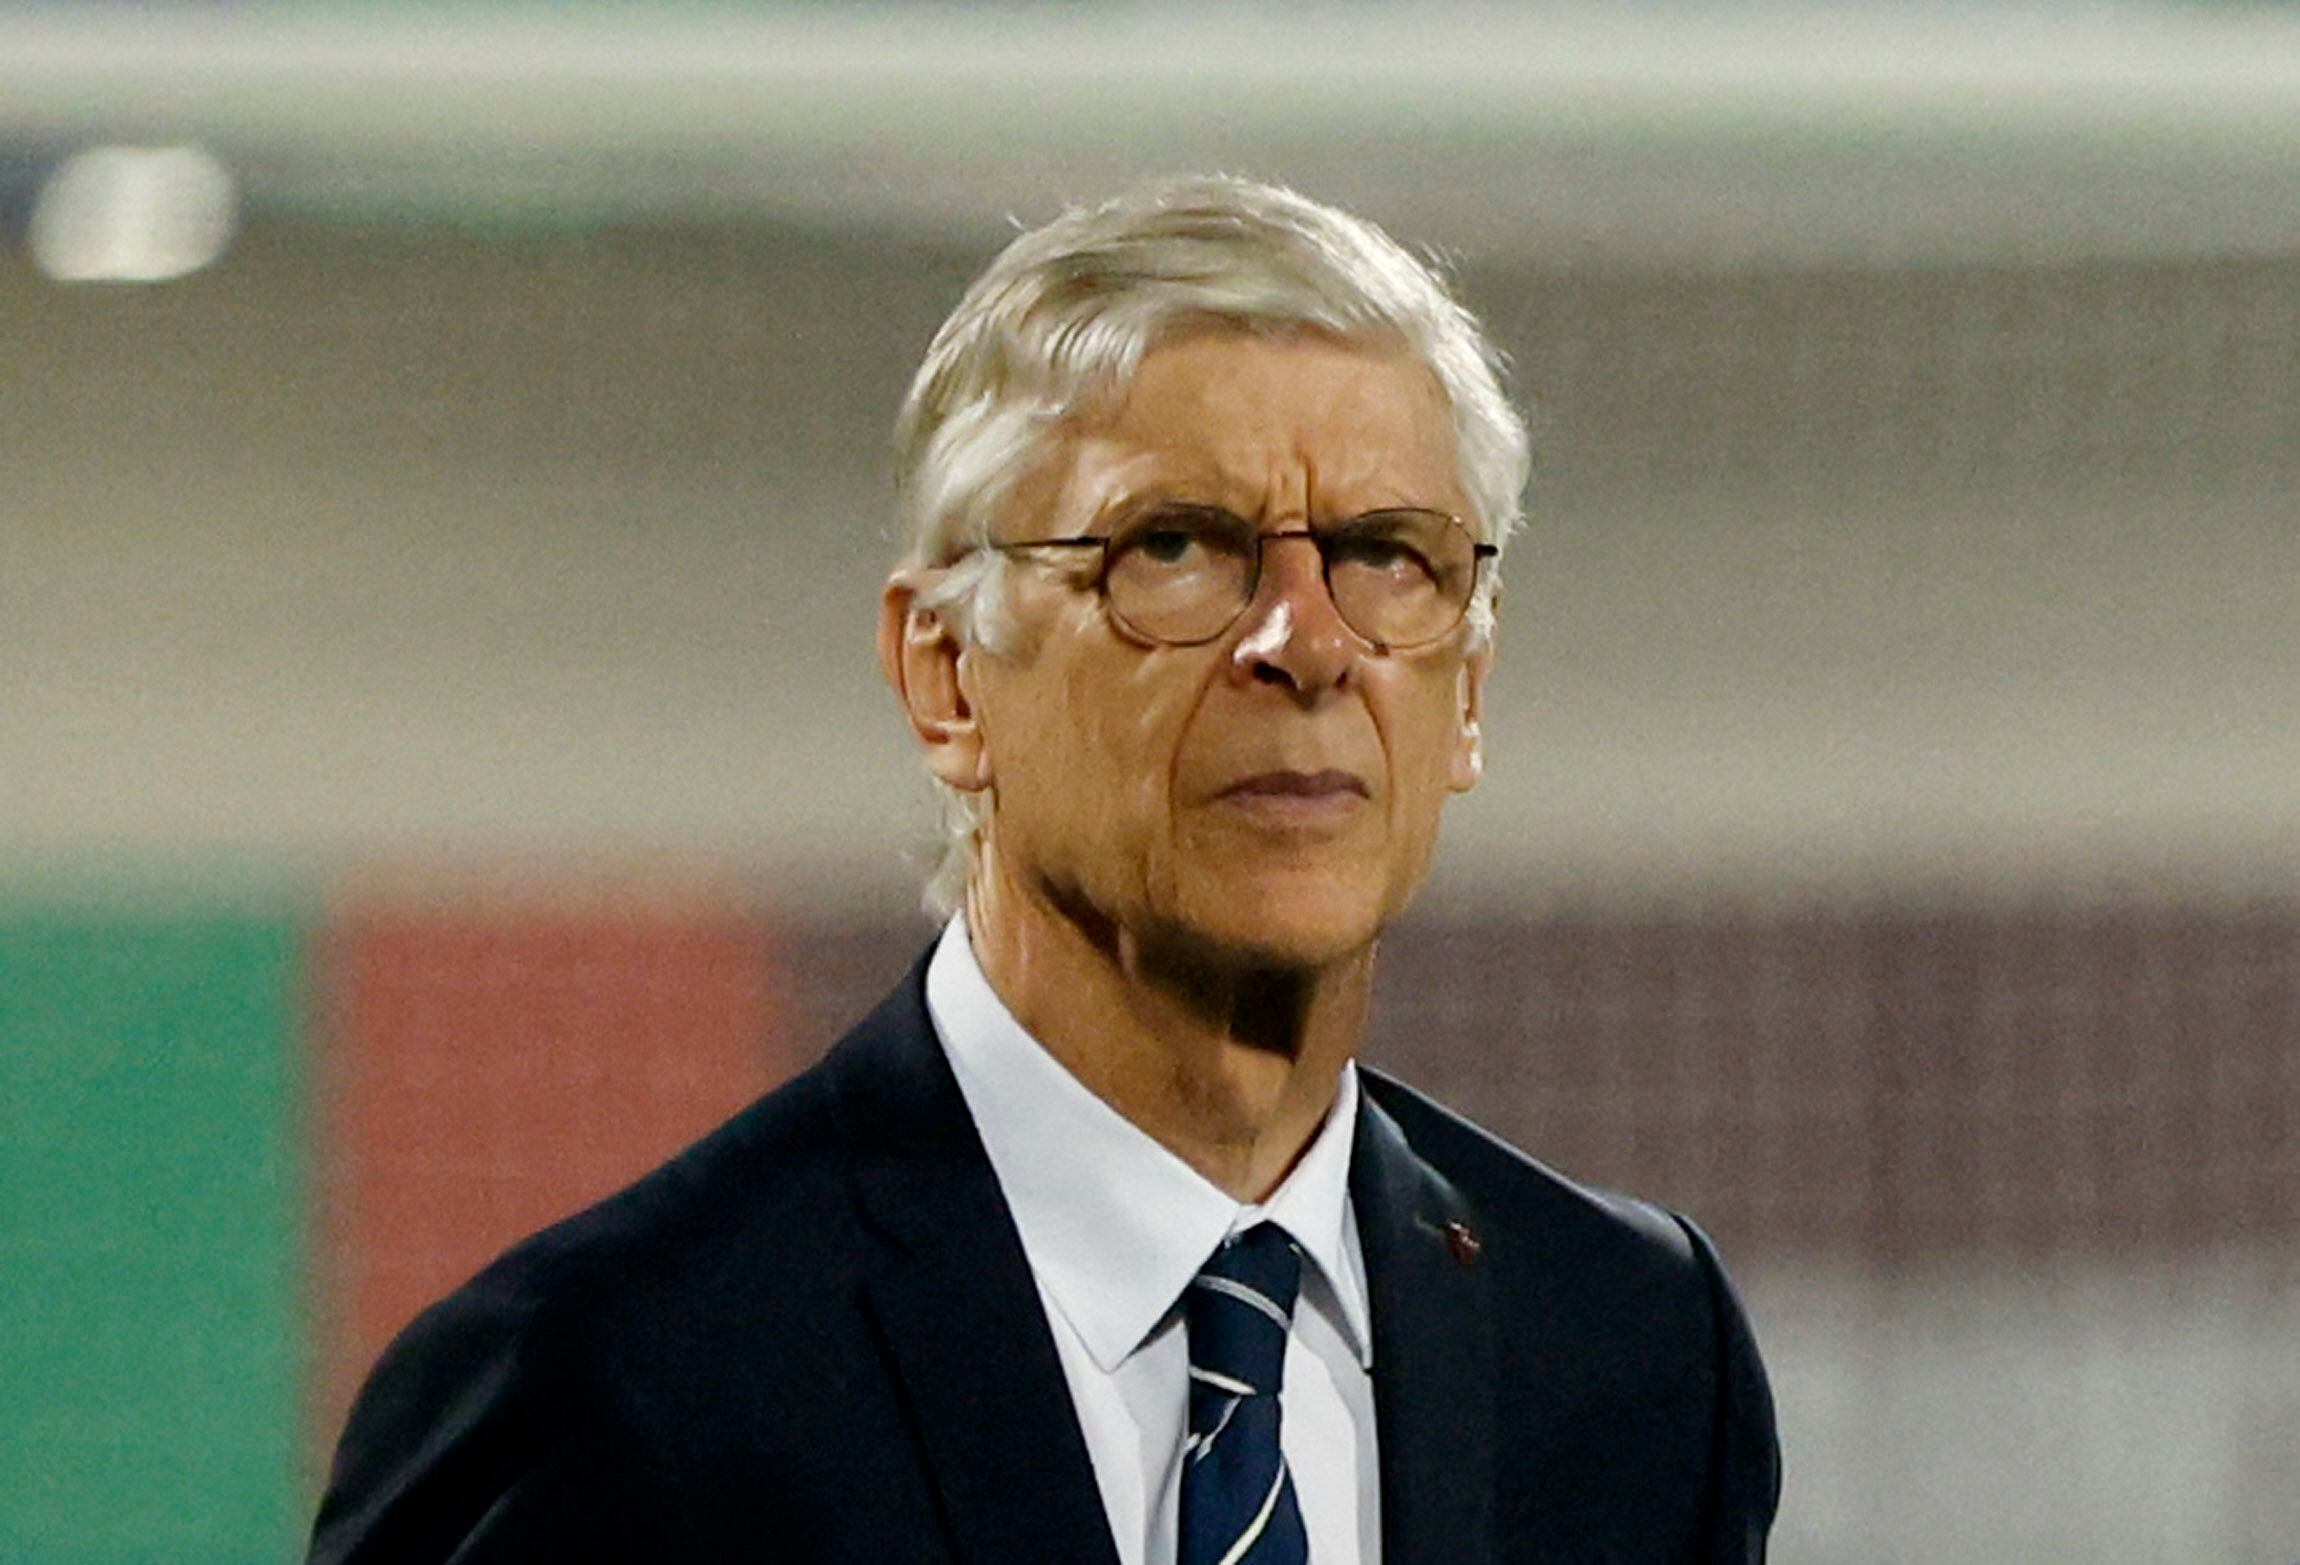 El técnico Arsene Wenger puso en el radar al Arsenal de Inglaterra - crédito Francis Mascarenhas / Reuters